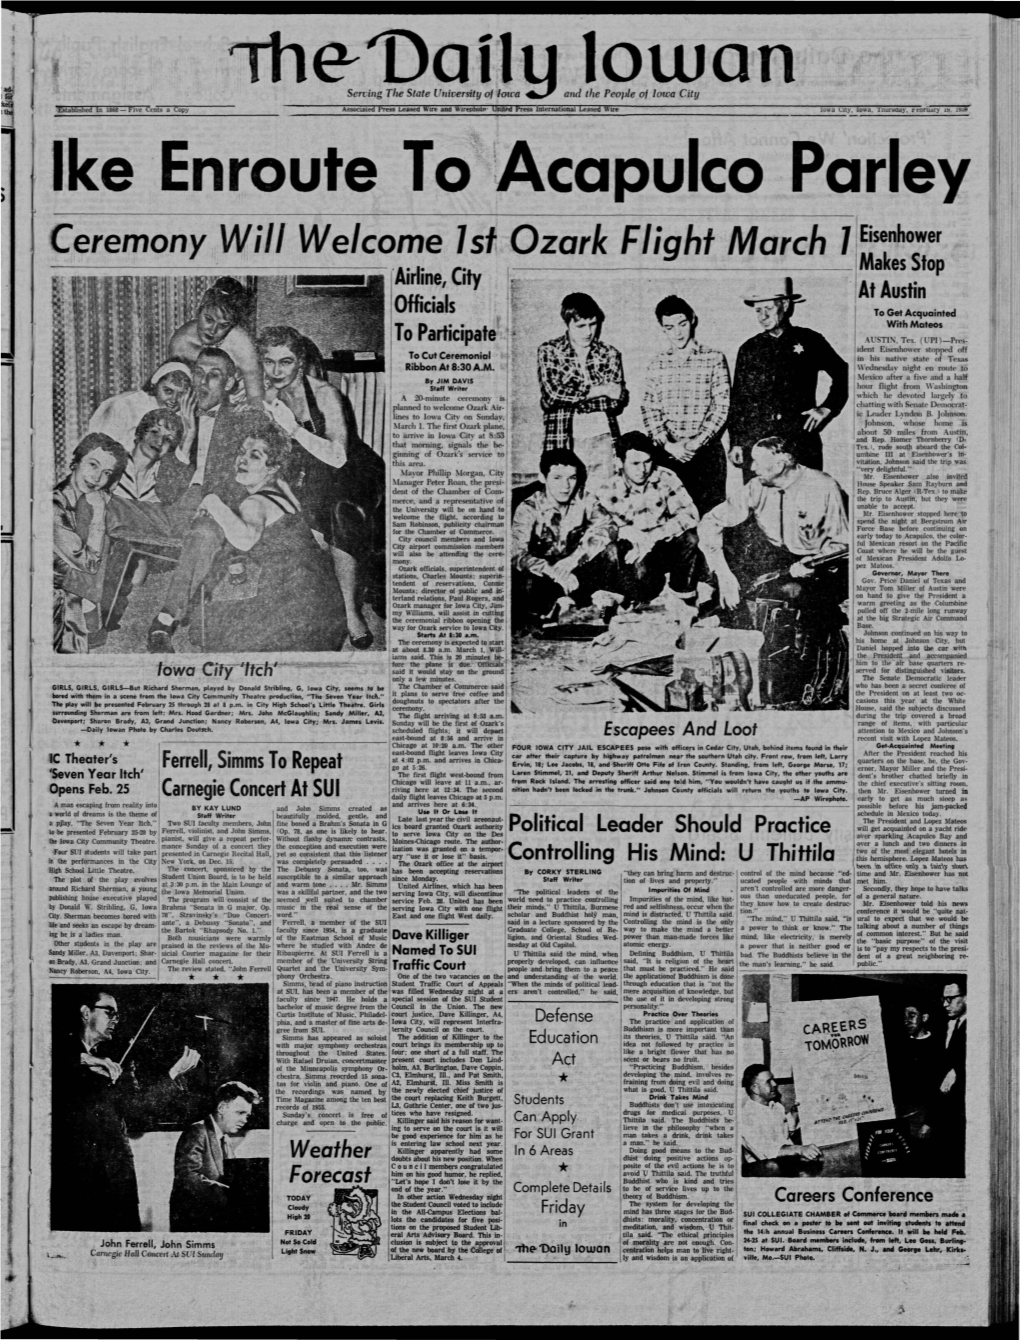 Daily Iowan (Iowa City, Iowa), 1959-02-19